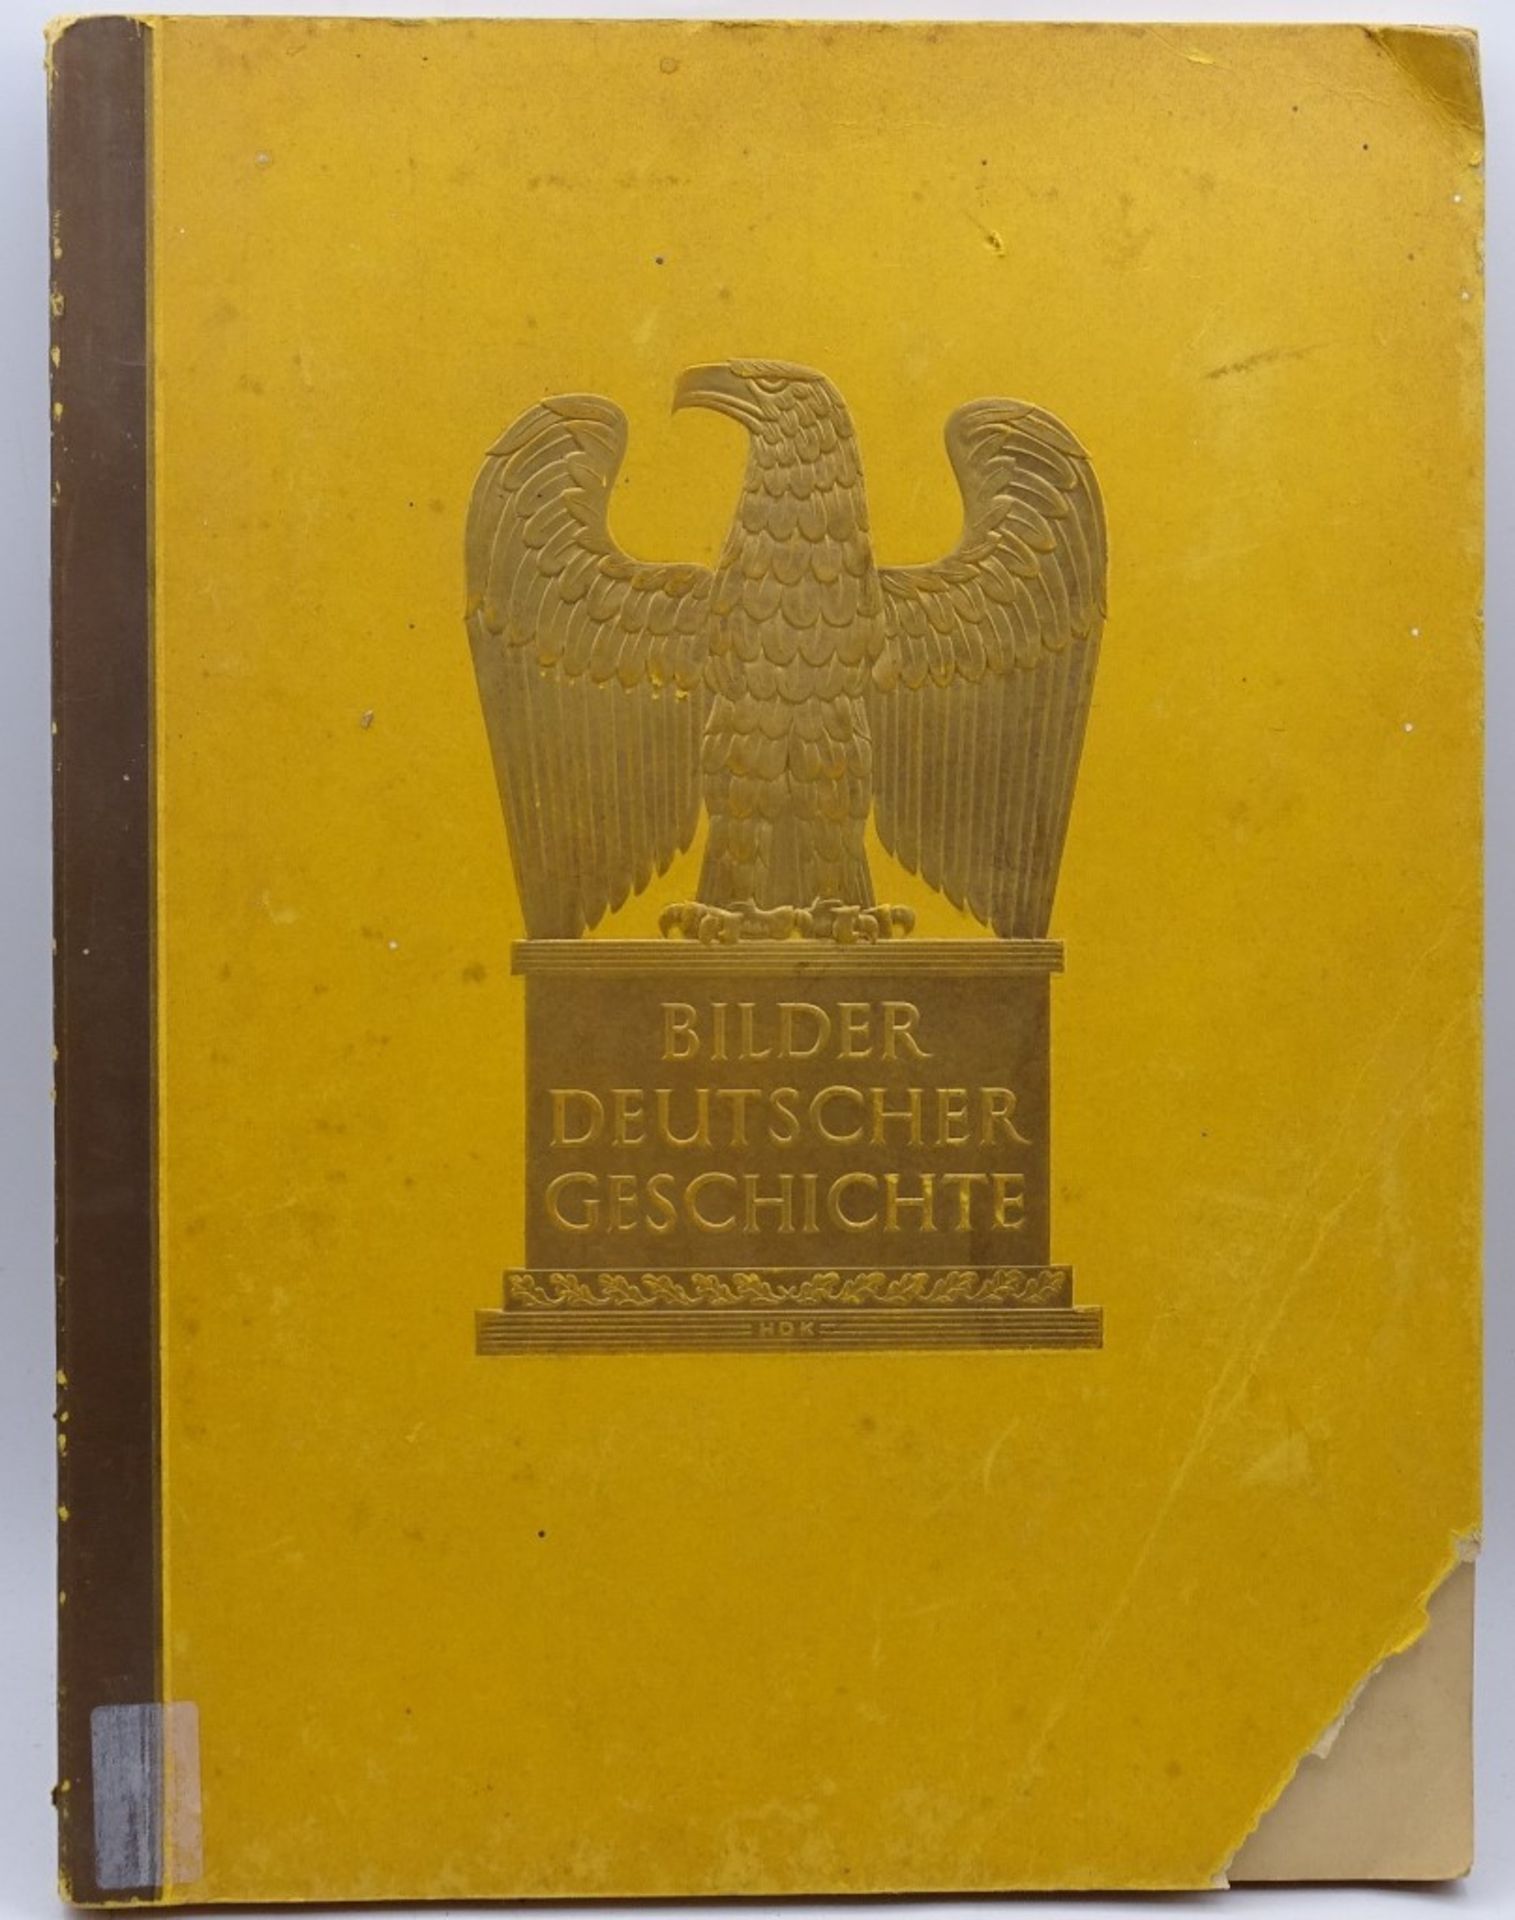 Sammelbilder Album Bilder deutscher Geschichte,Werk 12, 1936,vollständi